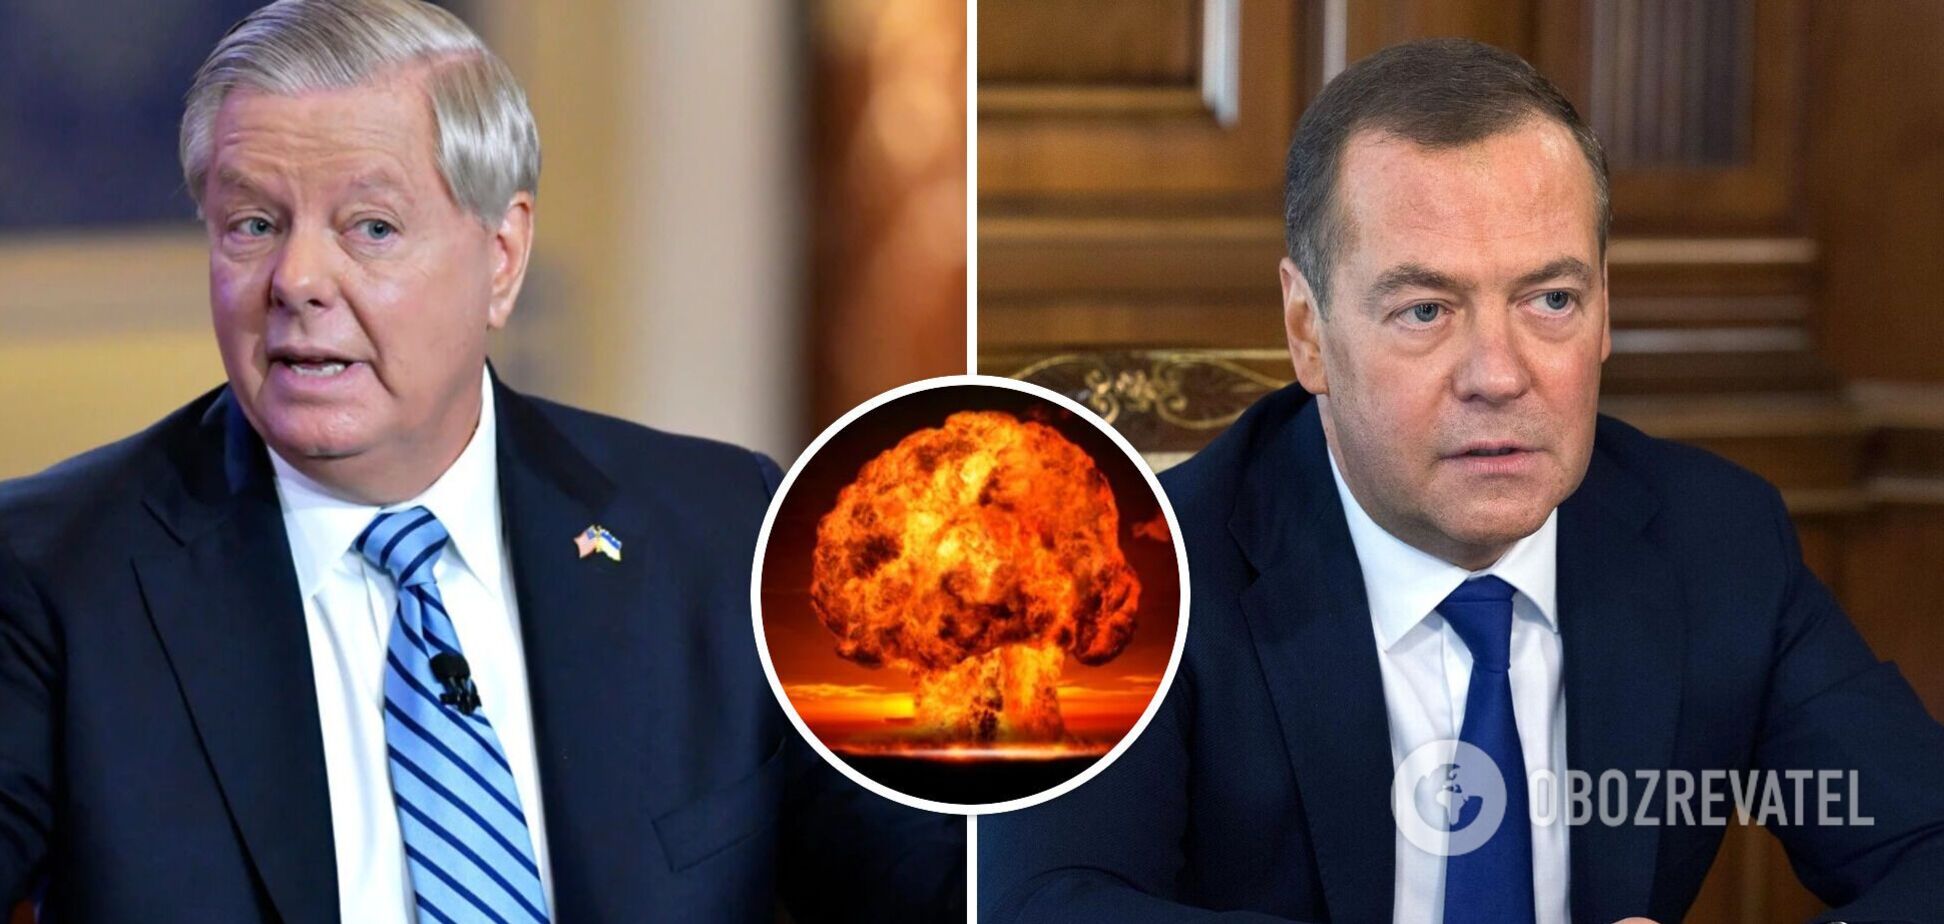 'Время протрезветь': сенатор США ответил на ядерные угрозы Медведева